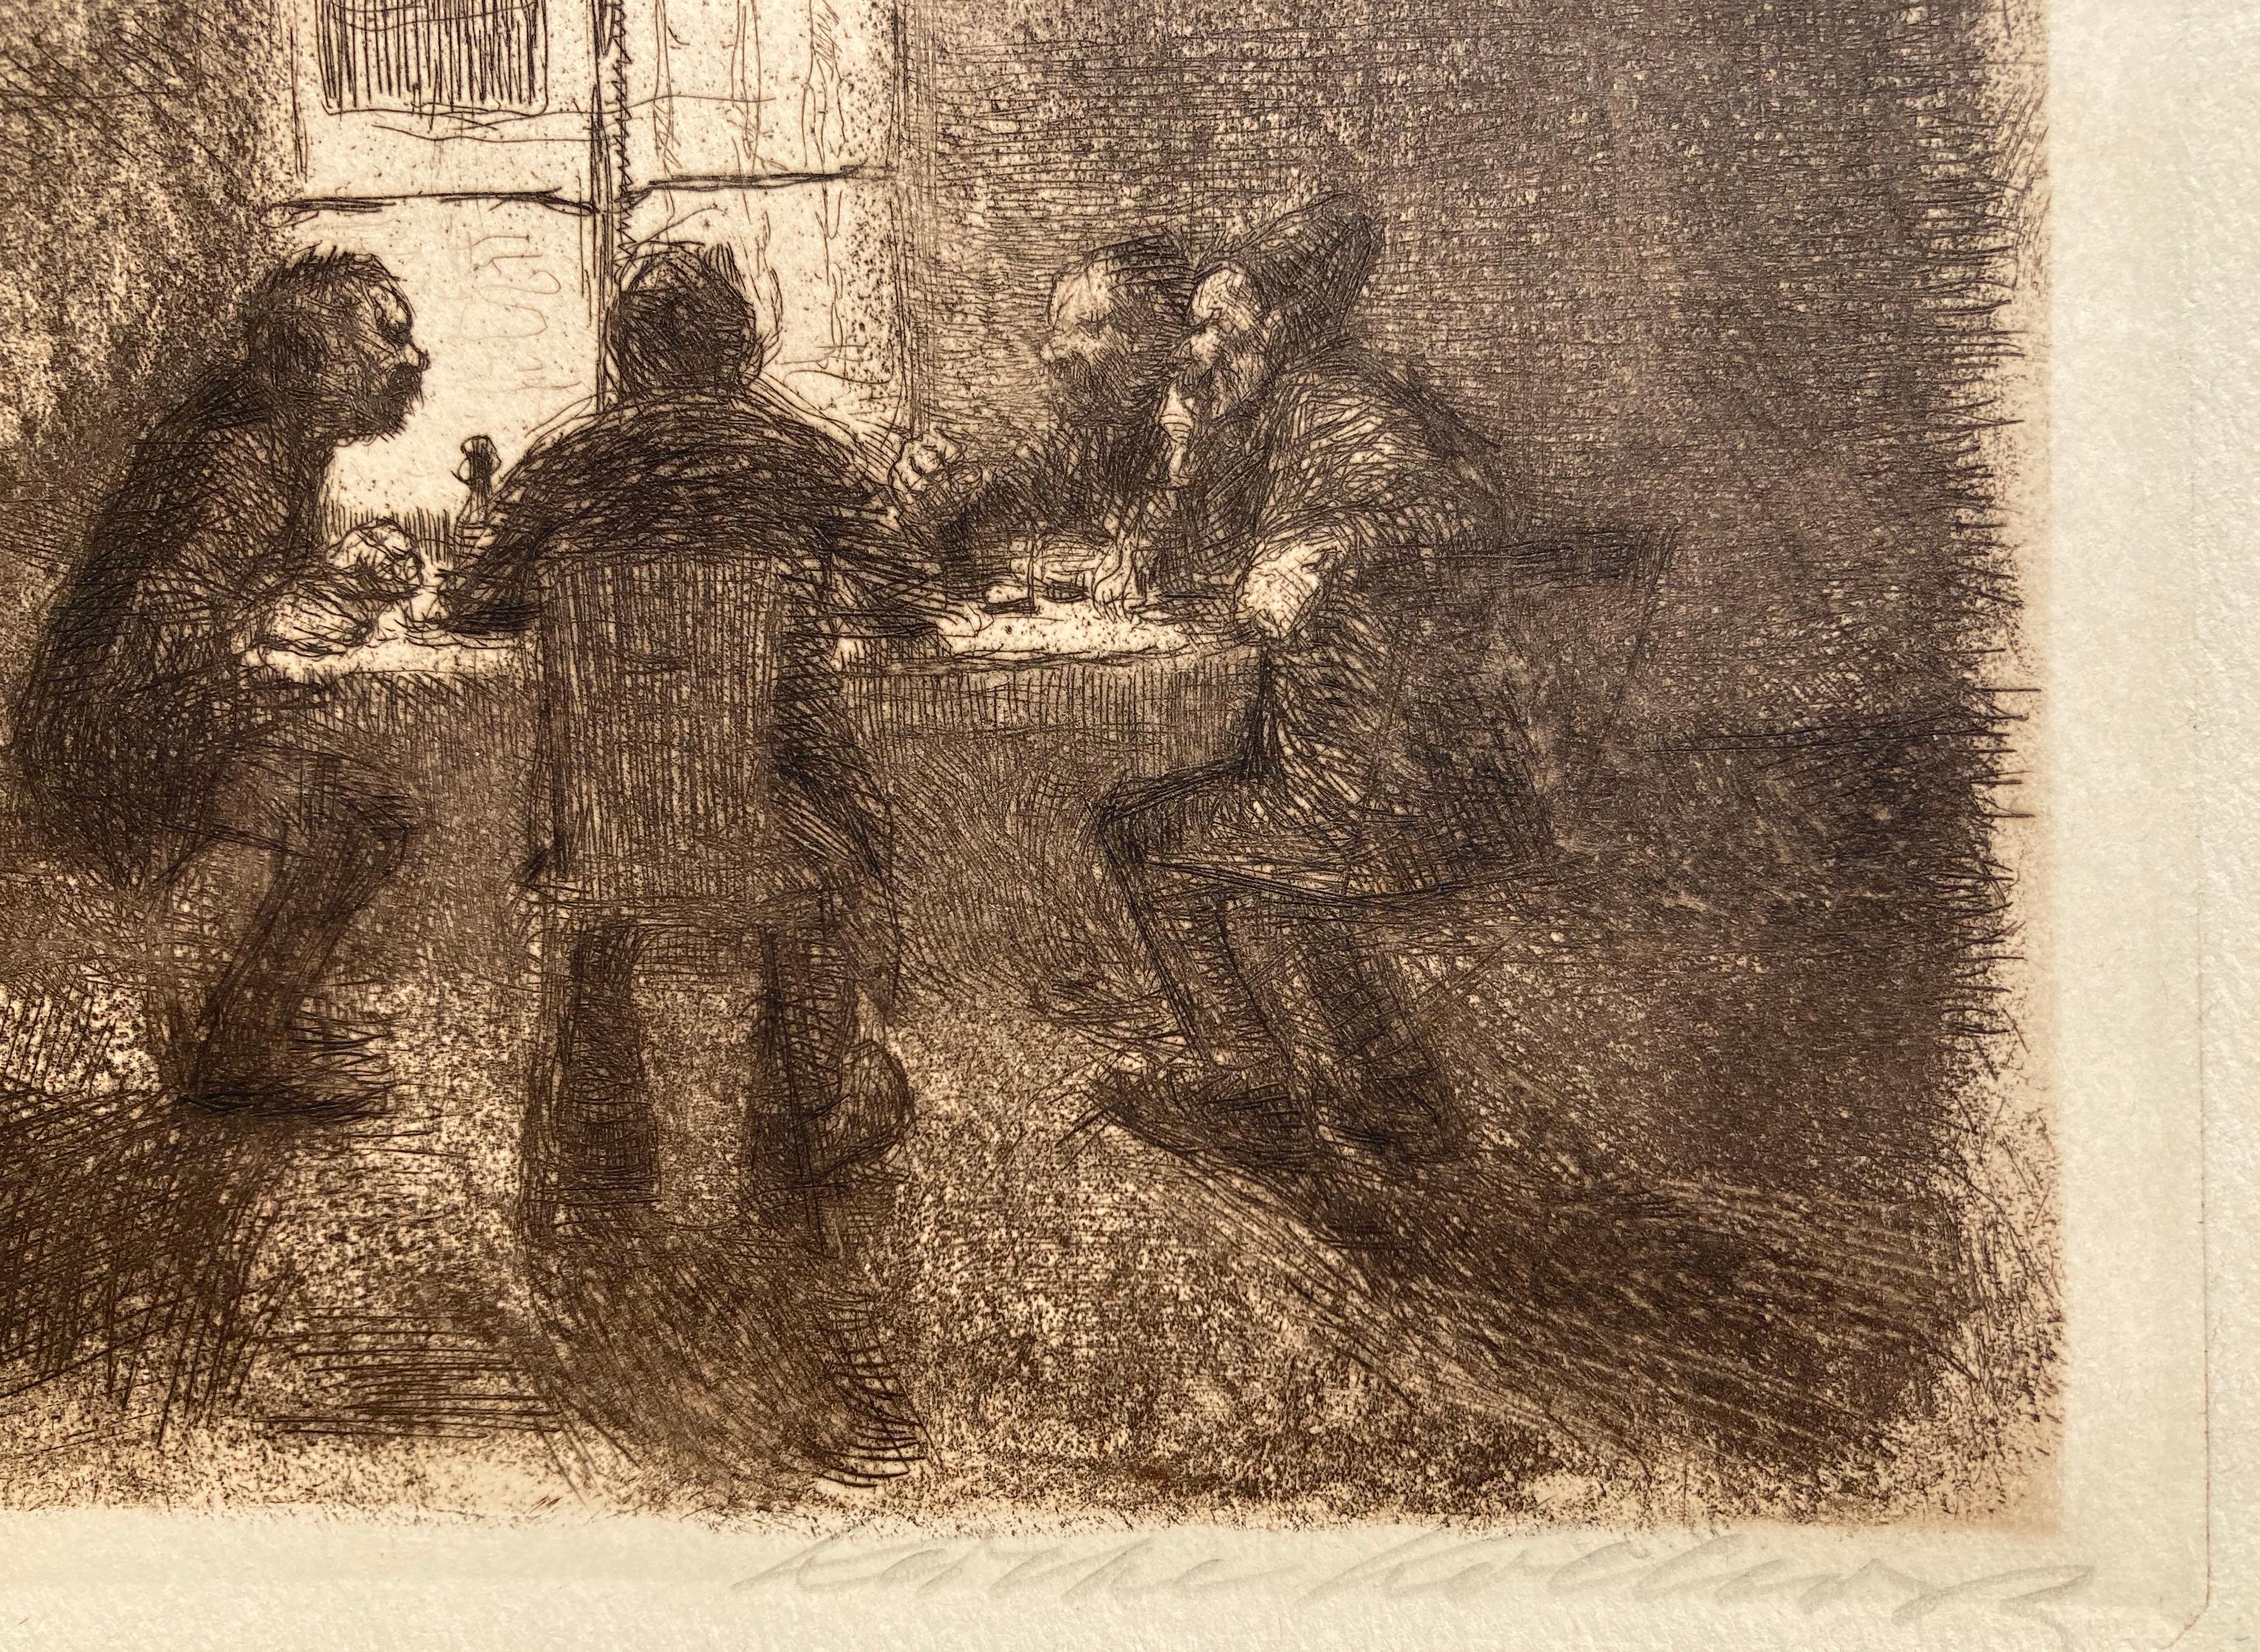 FOUR MEN IN THE PUB  (VIER  MANNER IN DER KNEIPE) - ****FIRST STATE**** - Brücke Print by Käthe Kollwitz